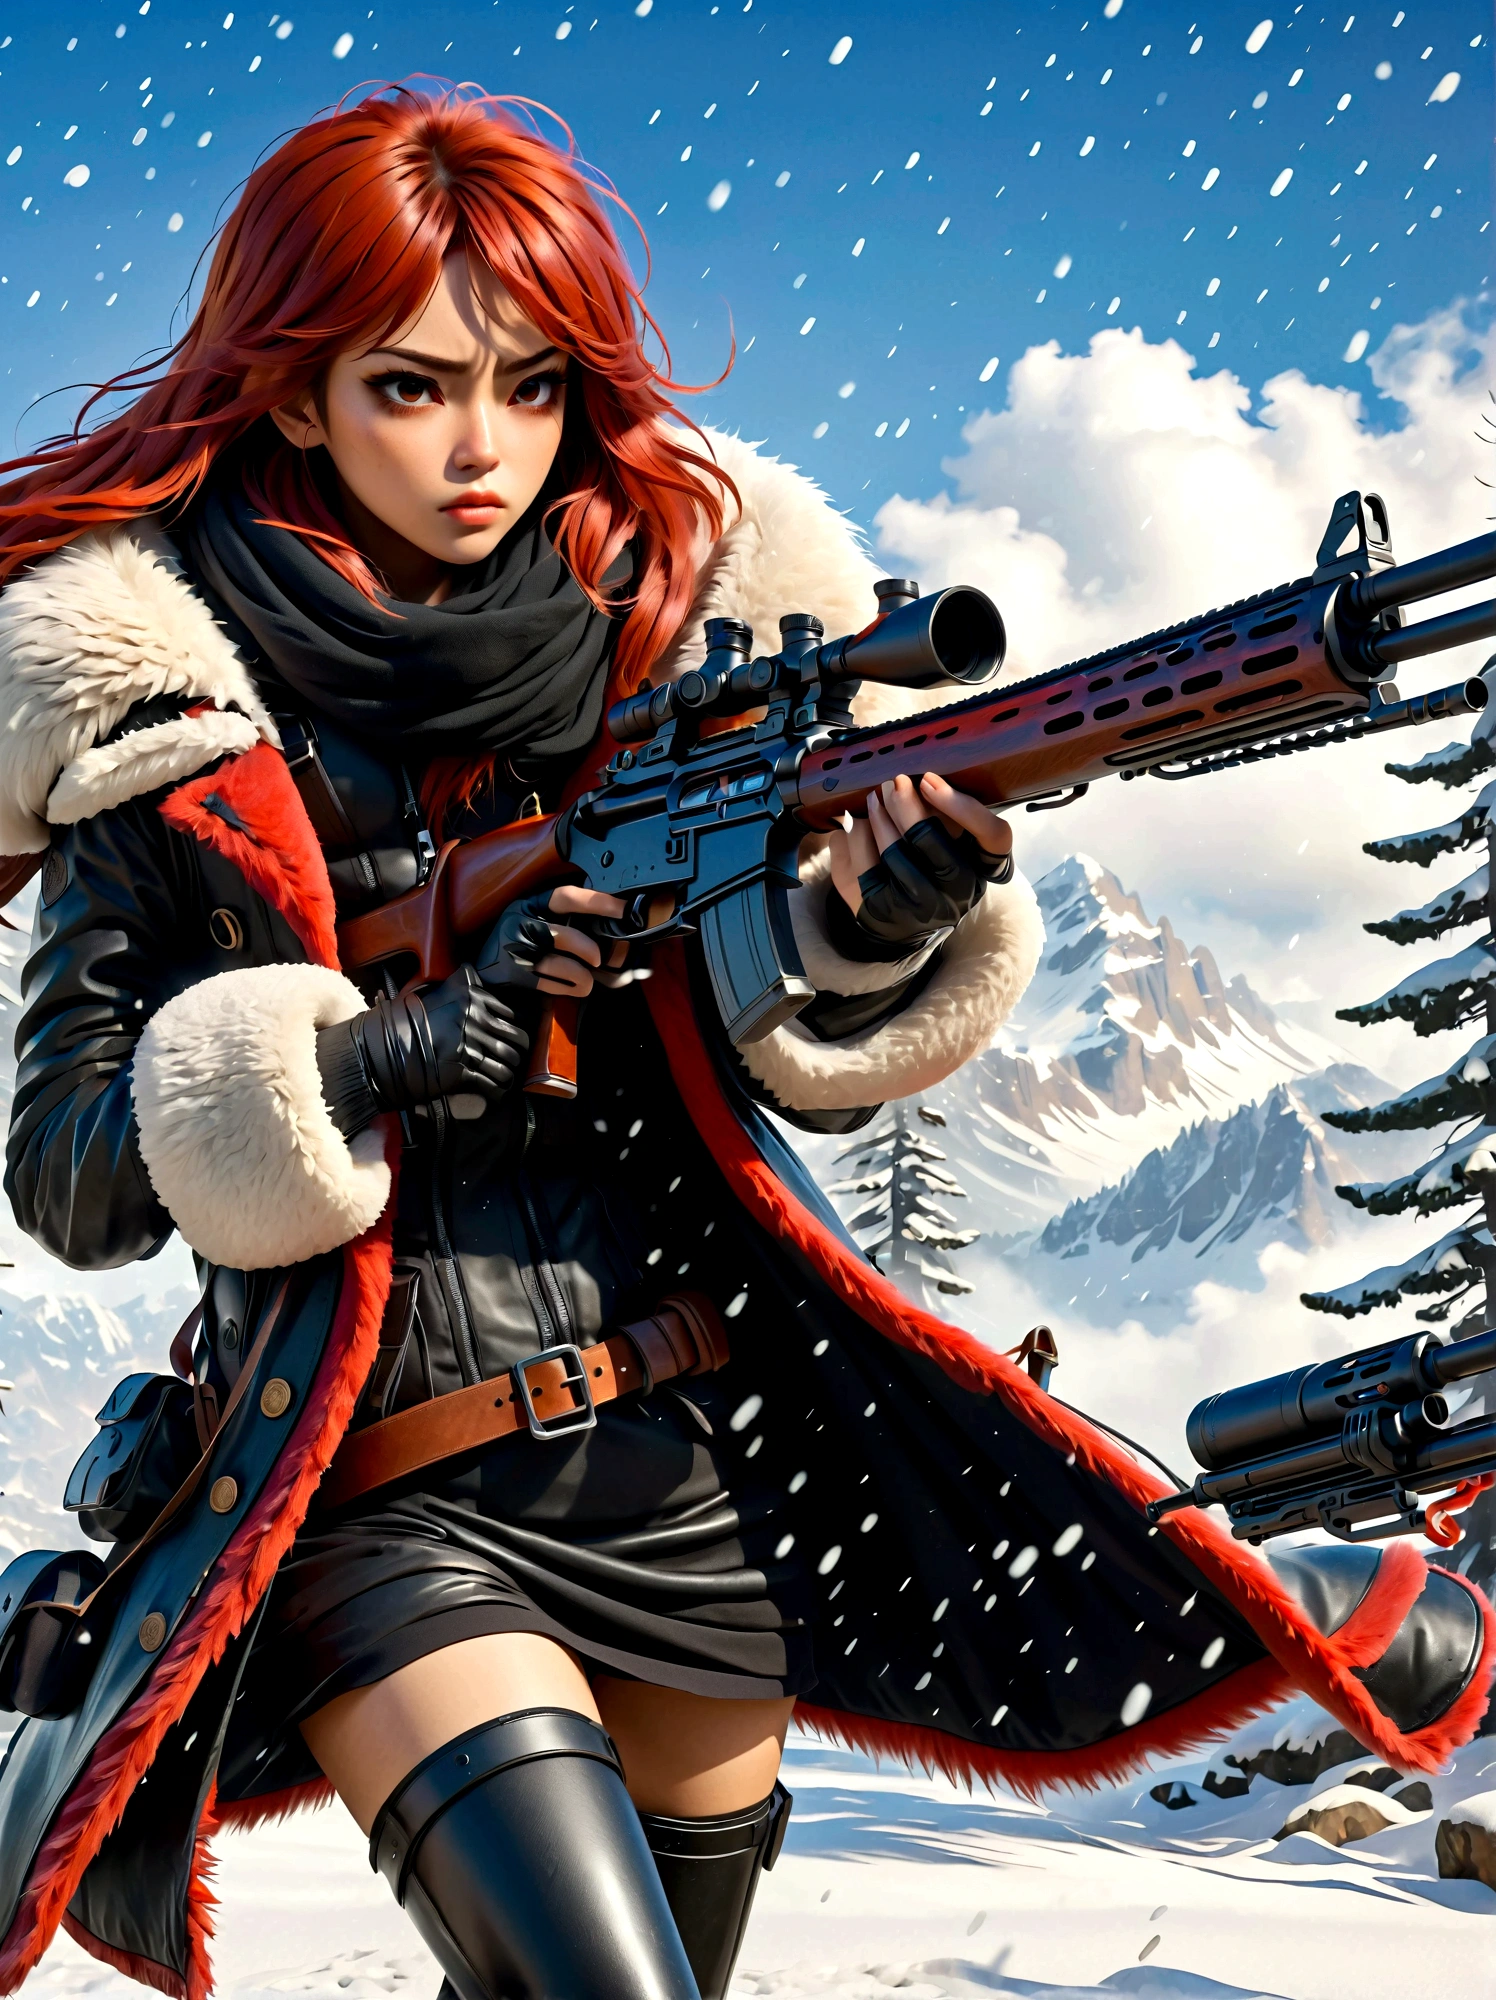 Девушка держит винтовку, (Отвратительный взгляд:1.5), Поза борьбы со снегом, Восток, Меч и душа, стиль чернил, длинные рыжие волосы, Кожаные и шубы, холодный, произведение искусства, 3d, 4k, подробный, Практичный